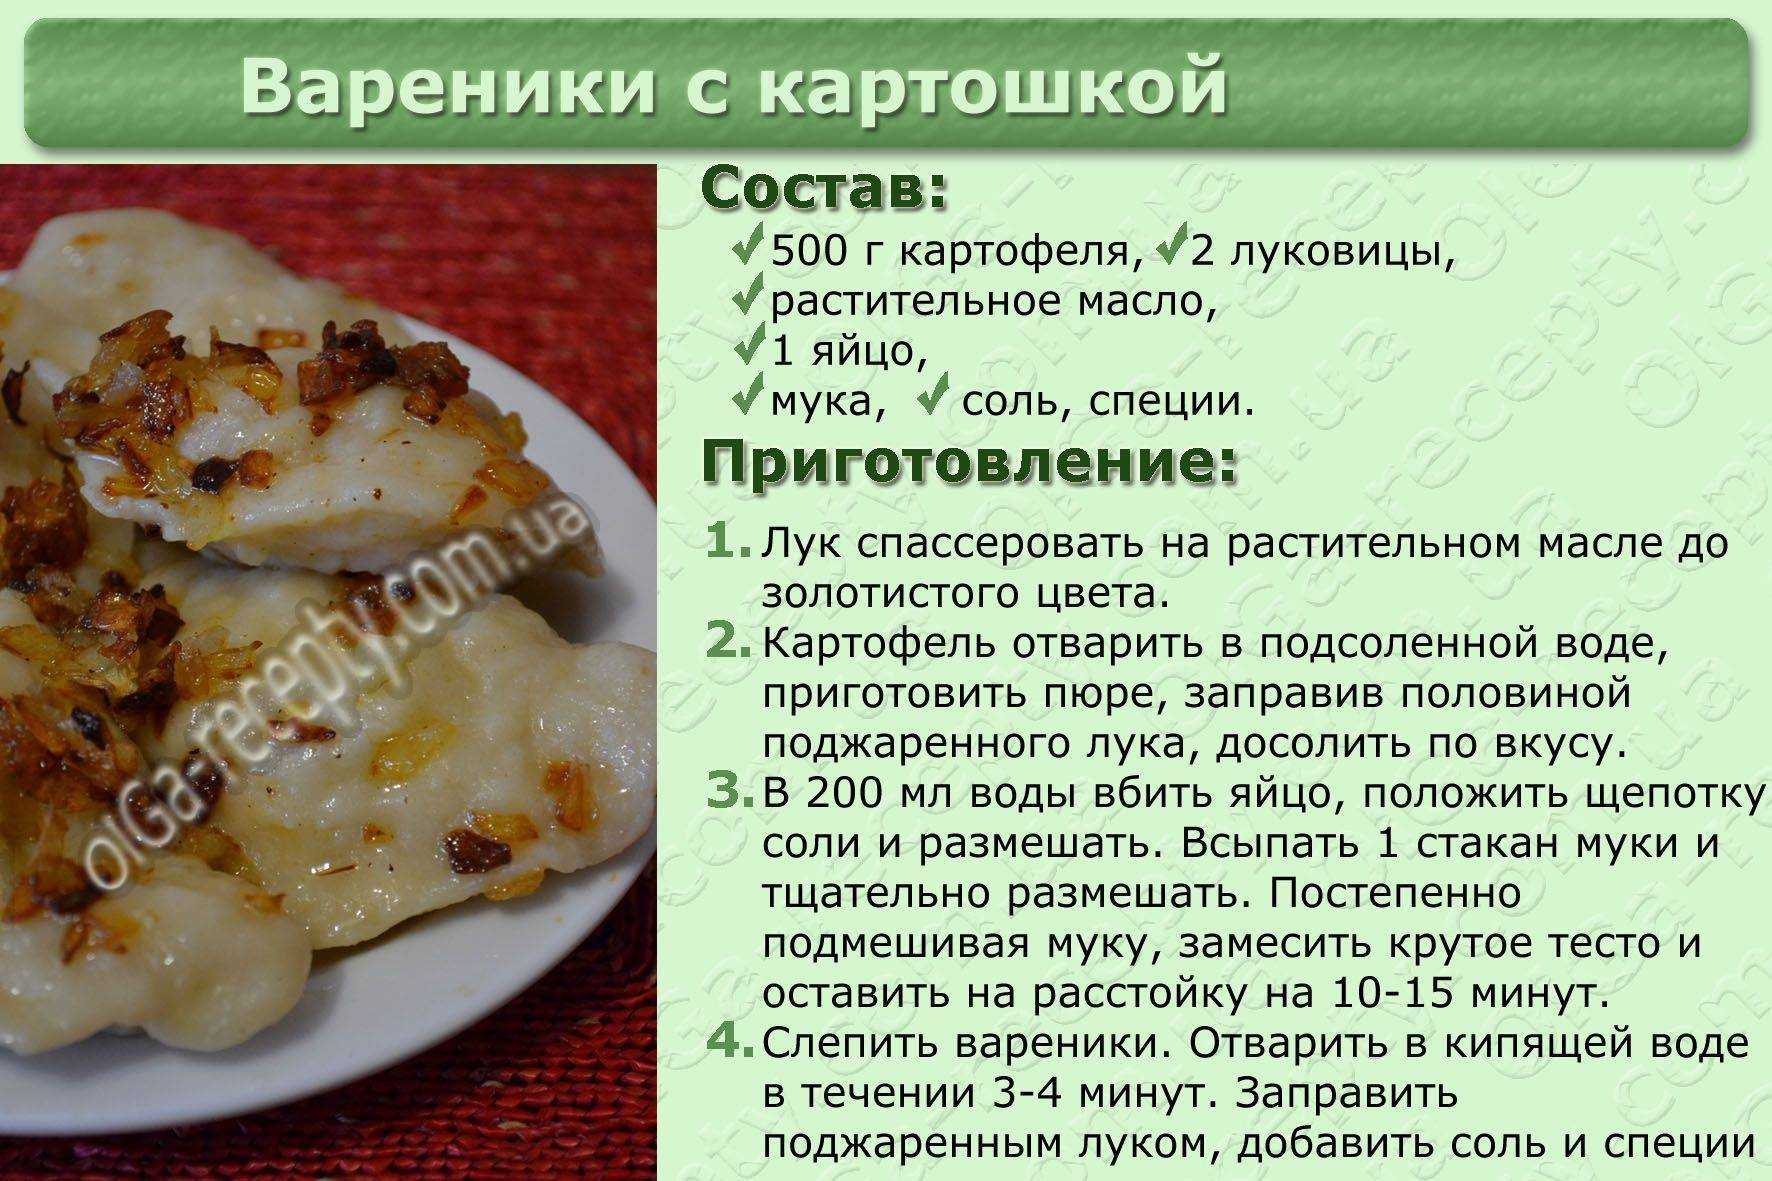 Рецепты теста на пару. Вареники с картошкой рецепт. Рецепт приготовления вареников с картошкой. Вкусное тесто на вареники. Рецептура блюда вареники с картошкой.